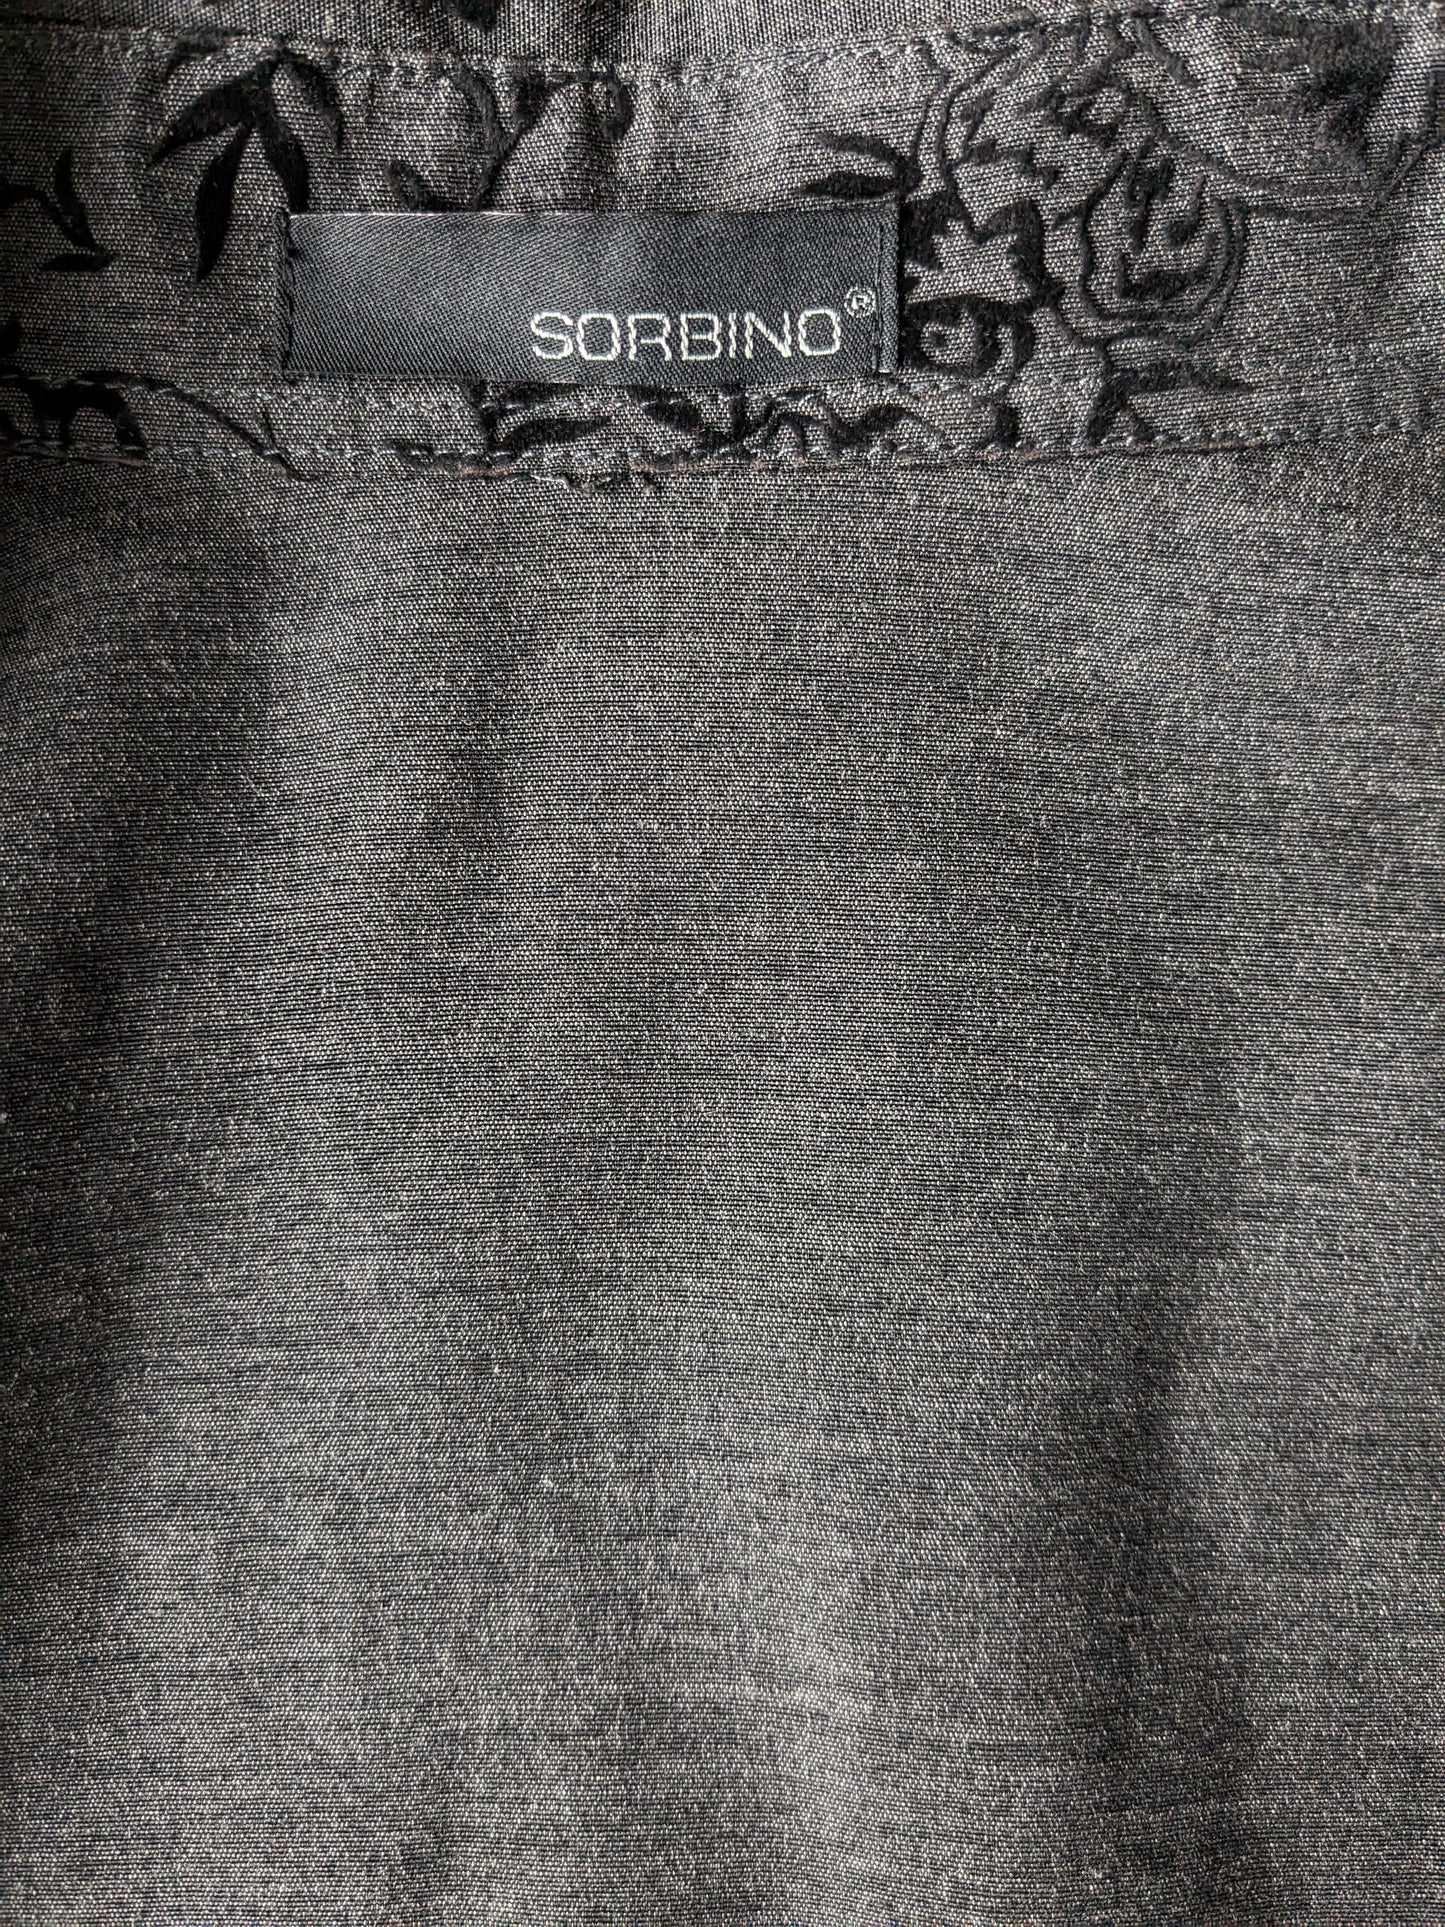 Sorbino shirt. Gray Black floral. Size L.